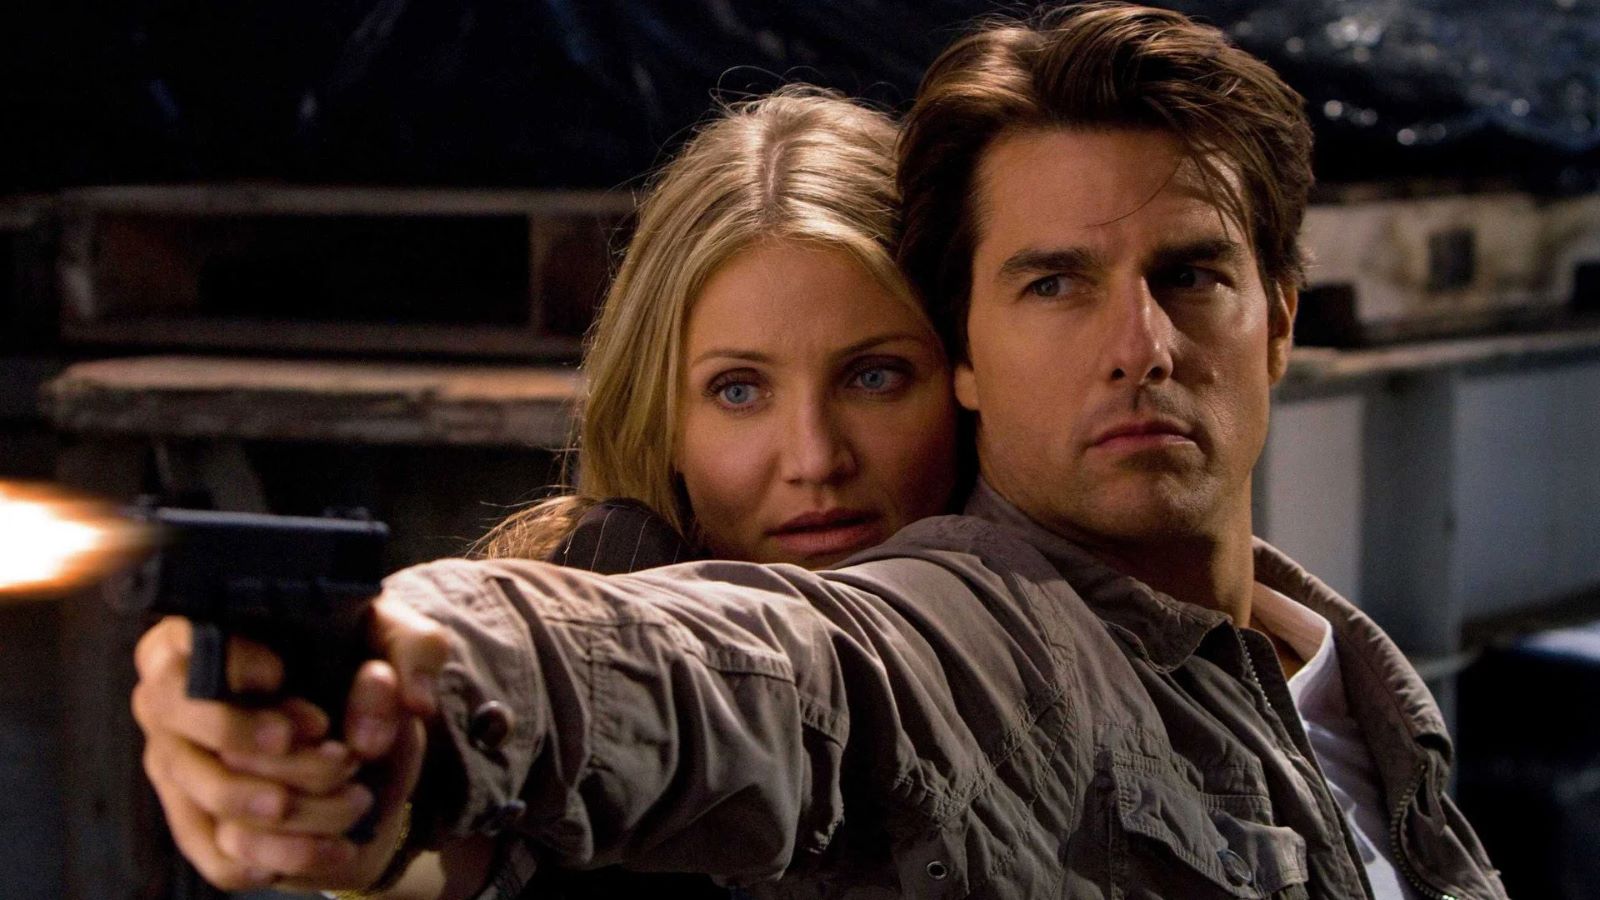 Innocenti bugie stasera su Rai 4: trama e cast del film con Tom Cruise e Cameron Diaz